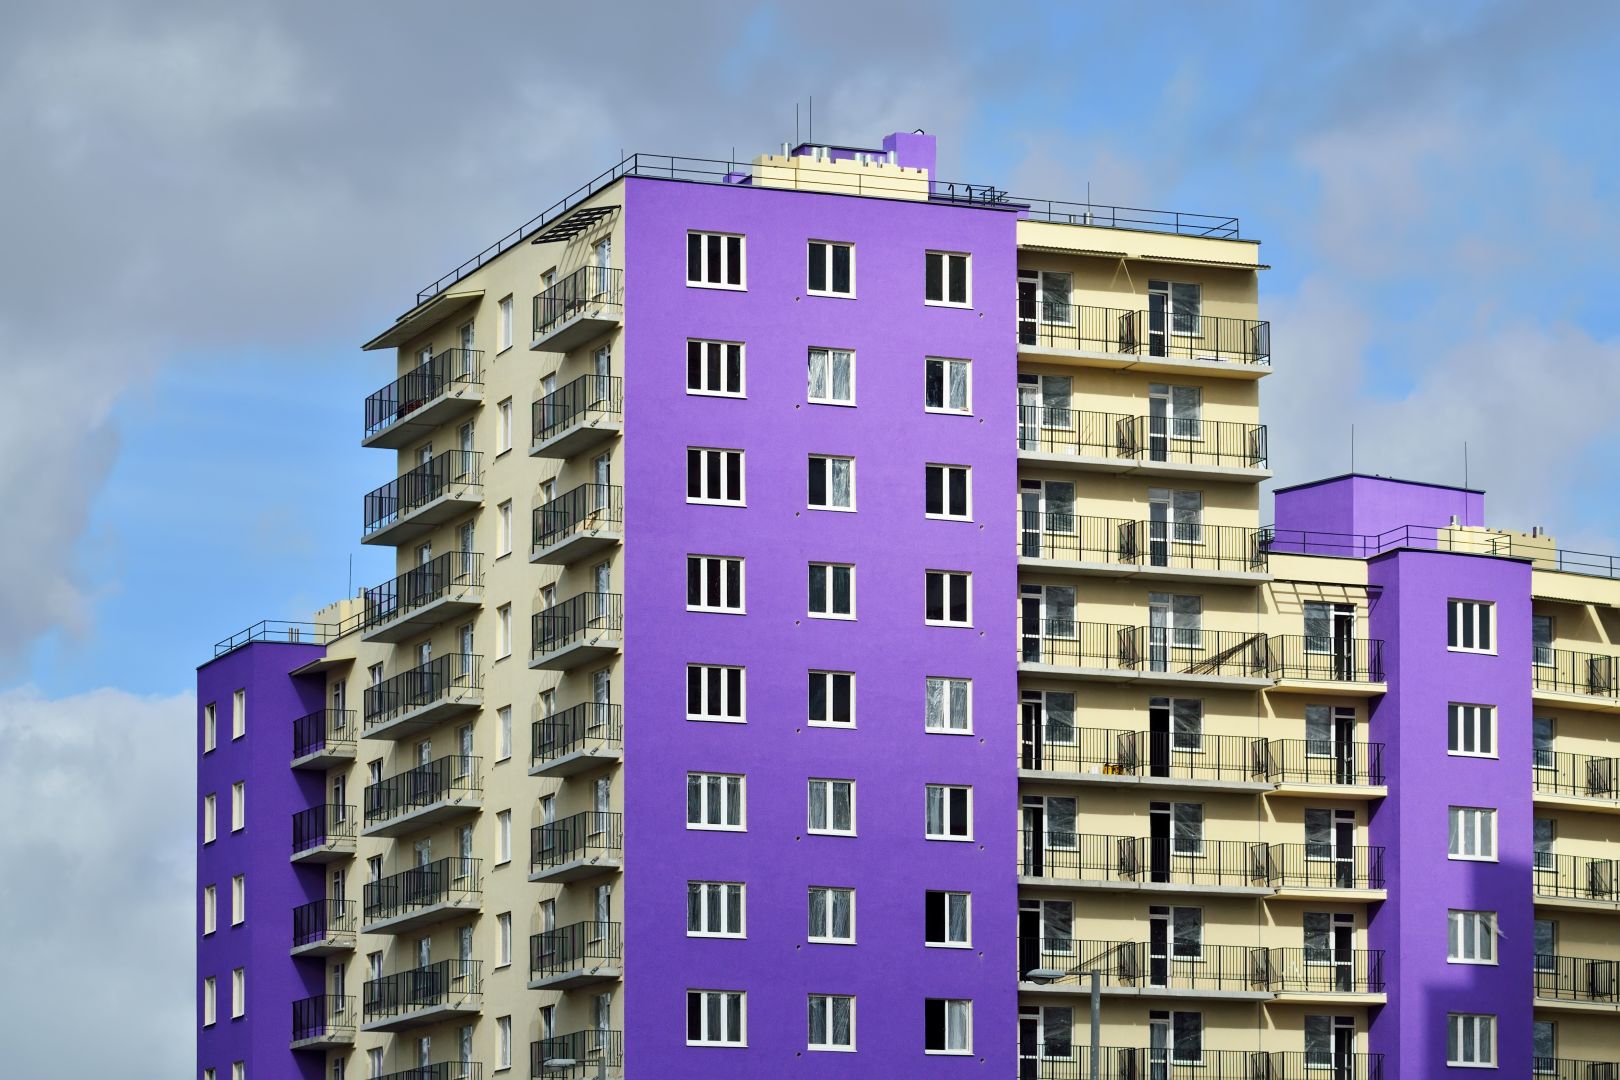 Opravu balkonů bytového domu, 31 balkonů